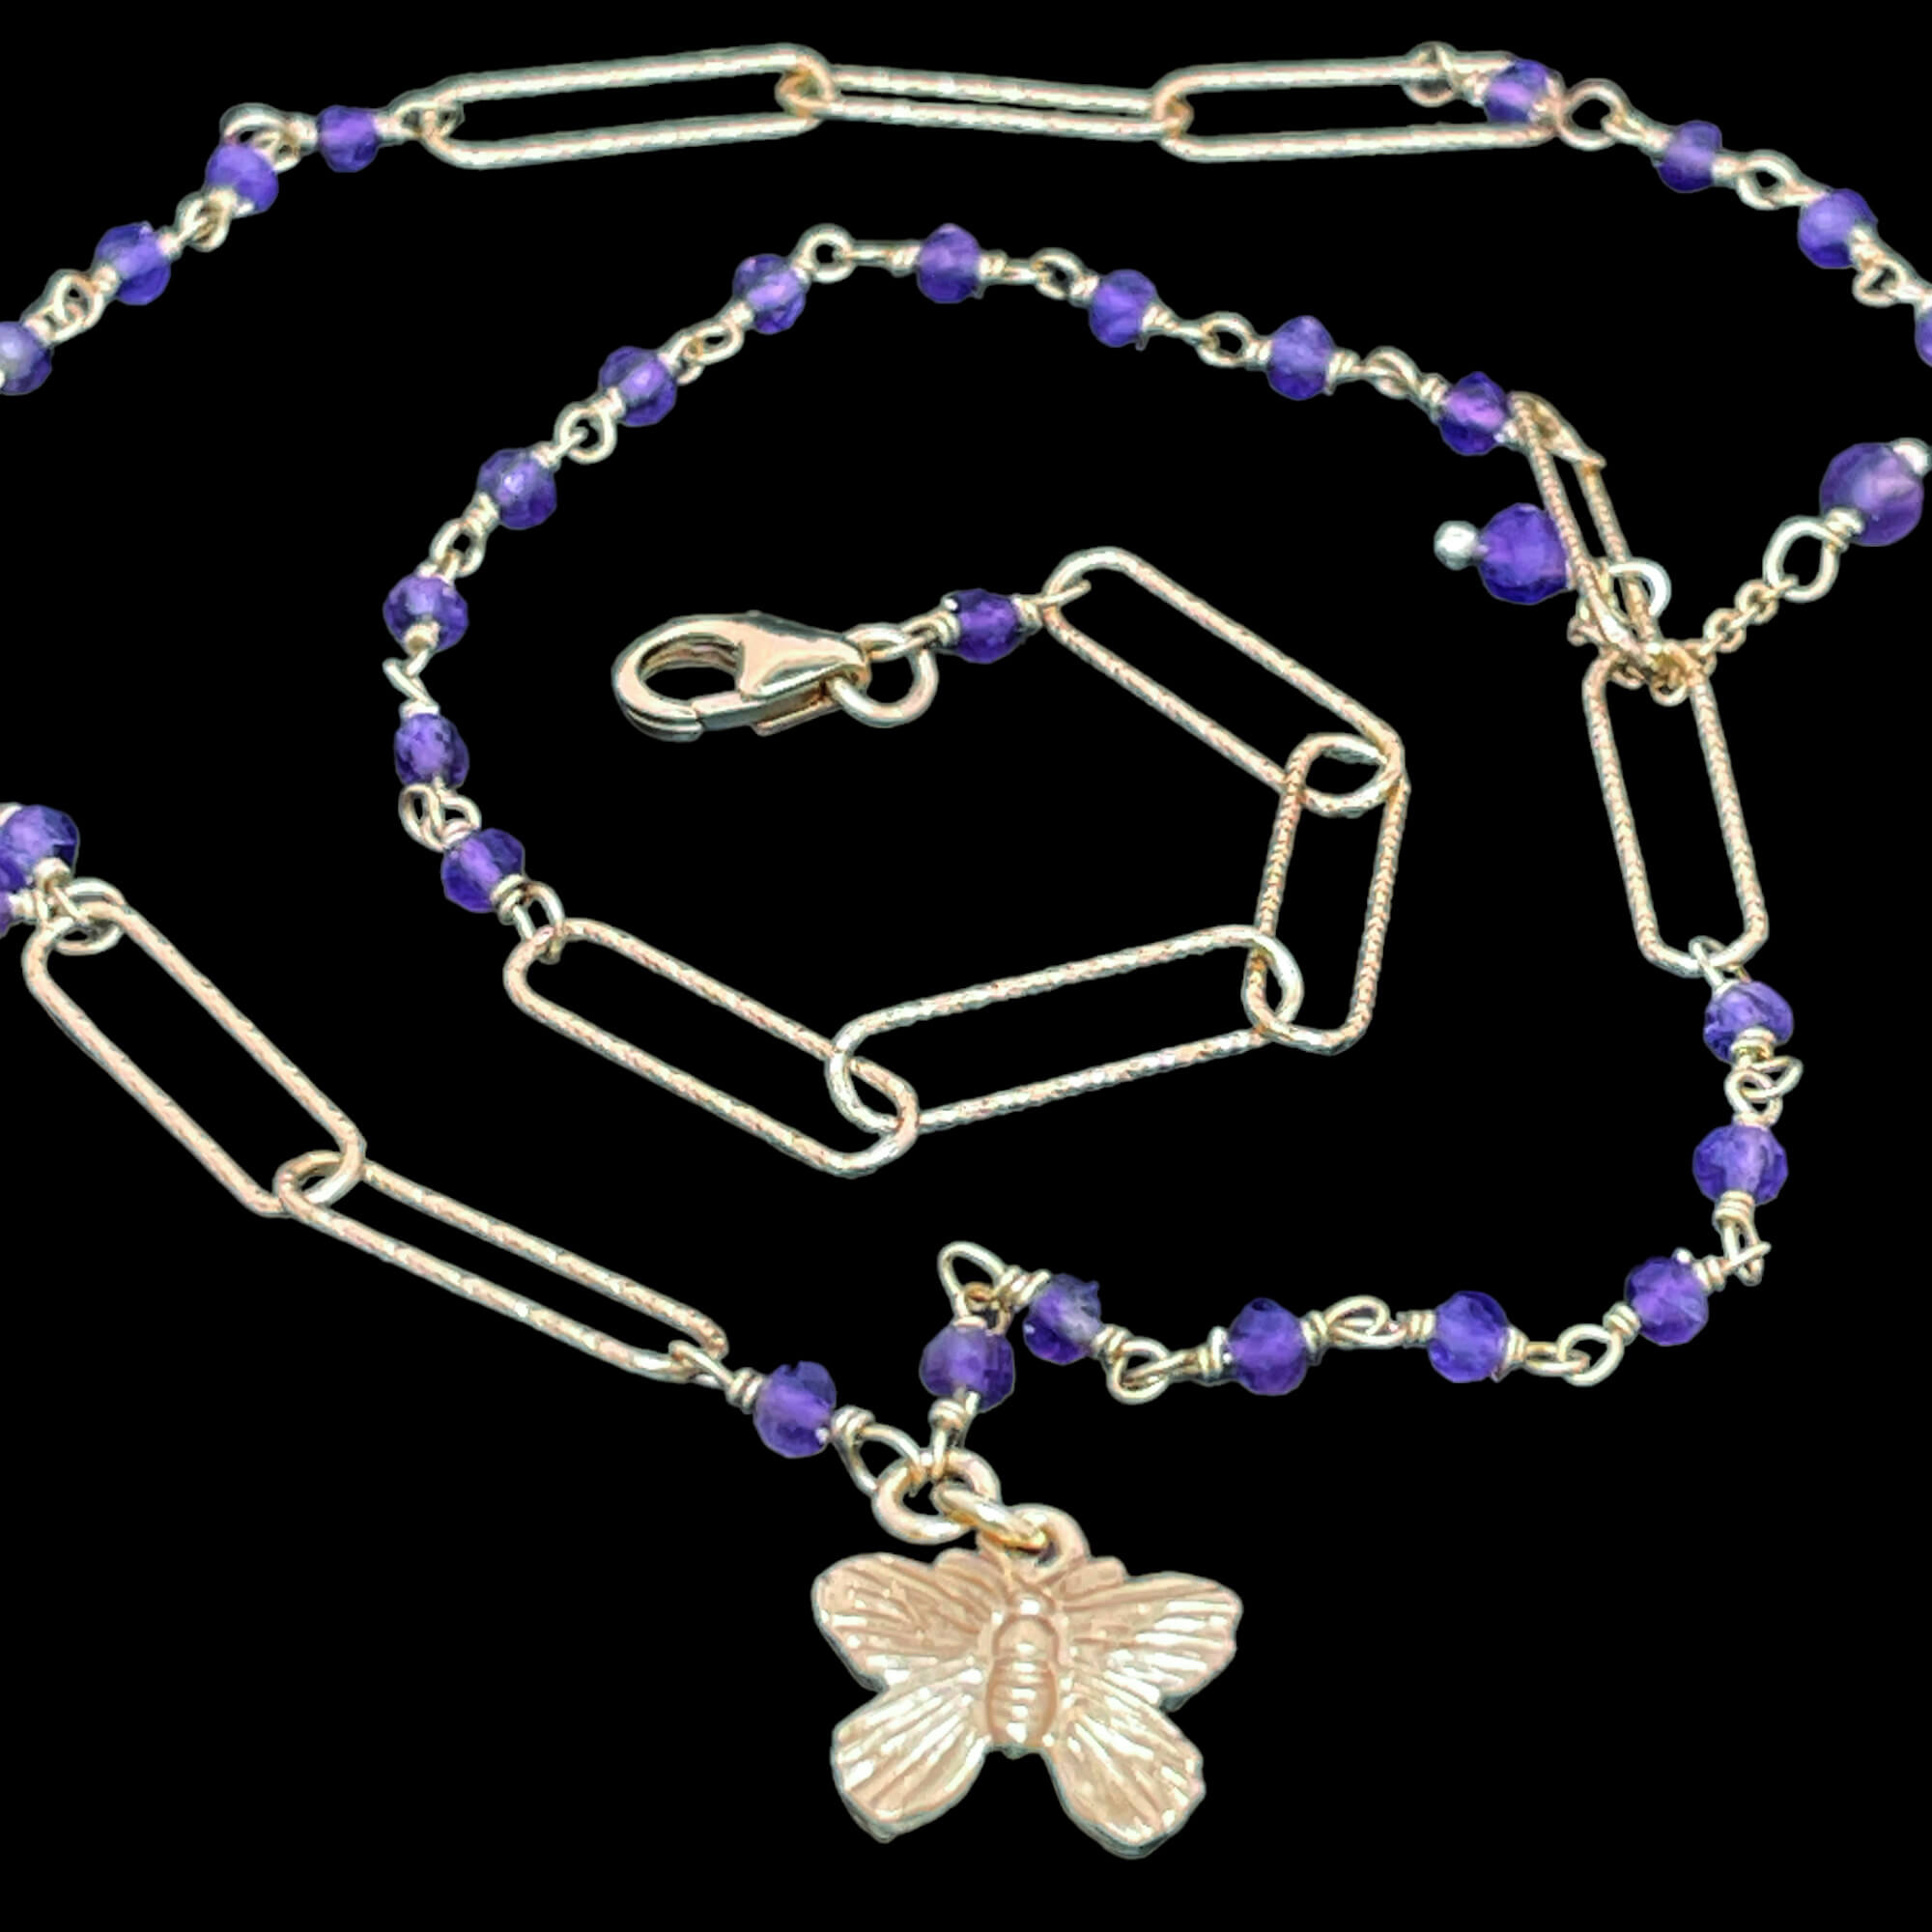 Vergoldete Halskette mit Amethyststeinen und einem Schmetterling